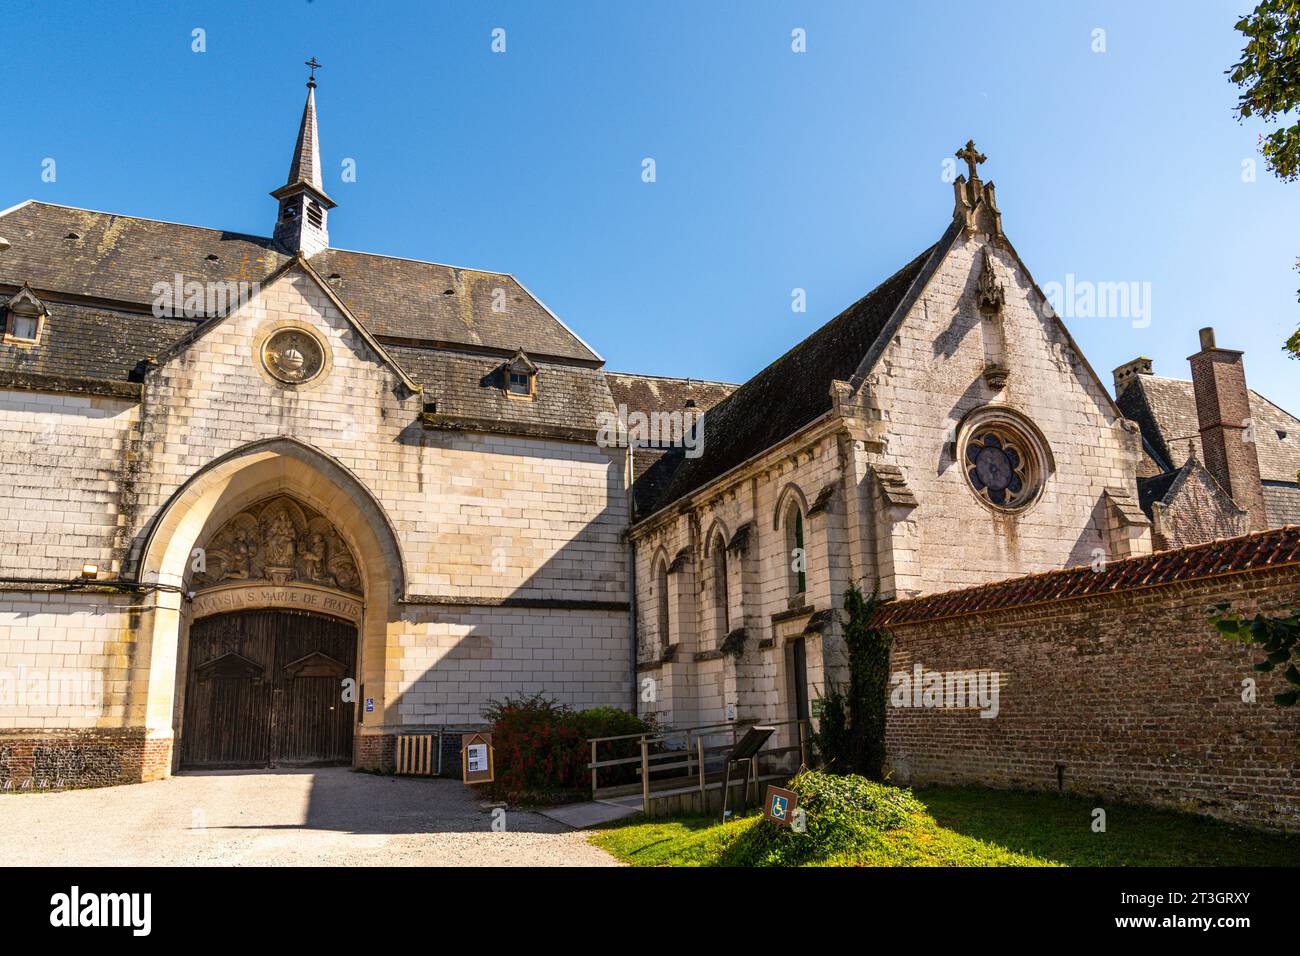 Frankreich, Pas-de-Calais, Neuville-sous-Montreuil, die Chartreuse Notre-Dame-des-Prés ist ein Kloster, das 1325 für den Kartäuserorden vom Grafen von Boulogne bei Montreuil-sur-mer gegründet wurde... In seiner 700-jährigen Geschichte wurde die Chartreuse zerstört, wiederaufgebaut, als Krankenhaus, Kulturzentrum genutzt, von Mönchen und Nonnen besetzt... Das Kartäuserkloster, das heute von Merula durchdrungen ist, ist nach Notre-Dame de Paris zweitklassig, was die Restaurierungsarbeiten betrifft. Stockfoto